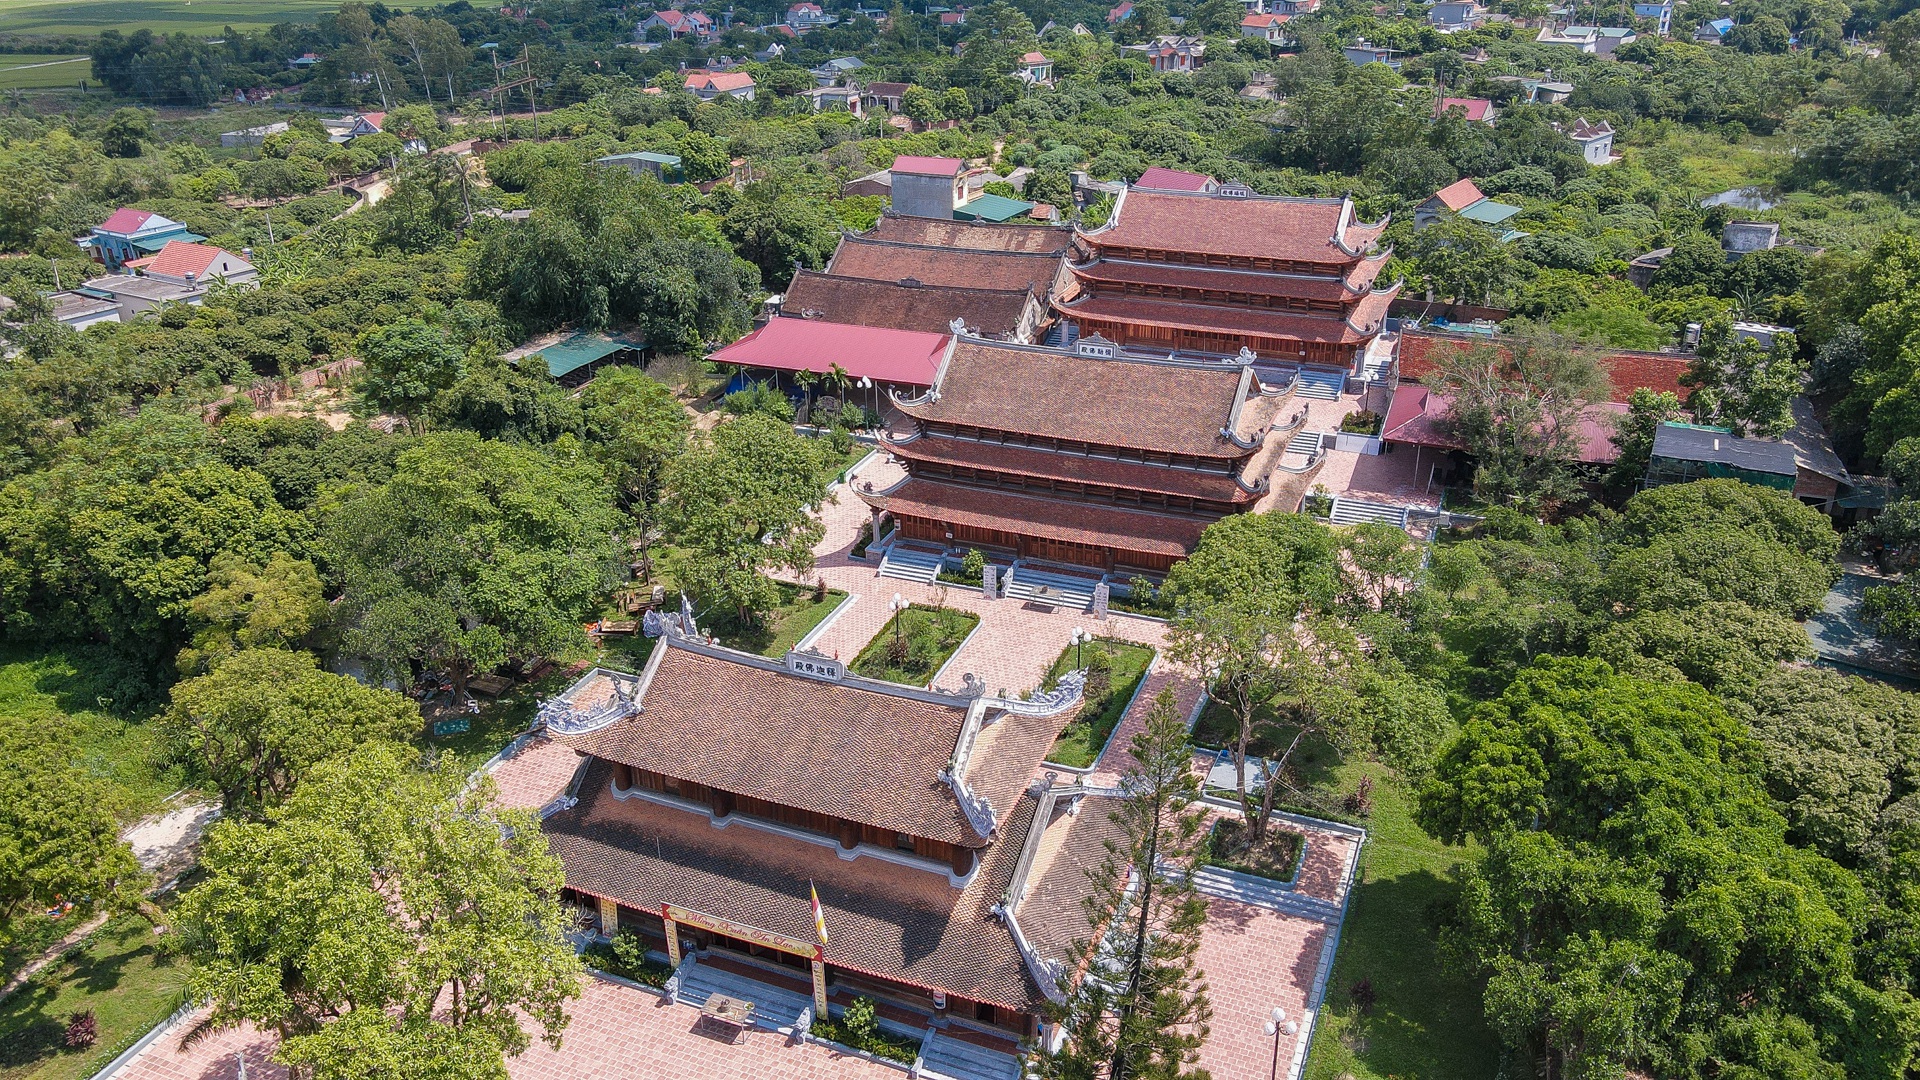 Ngôi chùa nghìn năm tuổi - Trường Đại học Phật giáo đầu tiên ở nước ta 